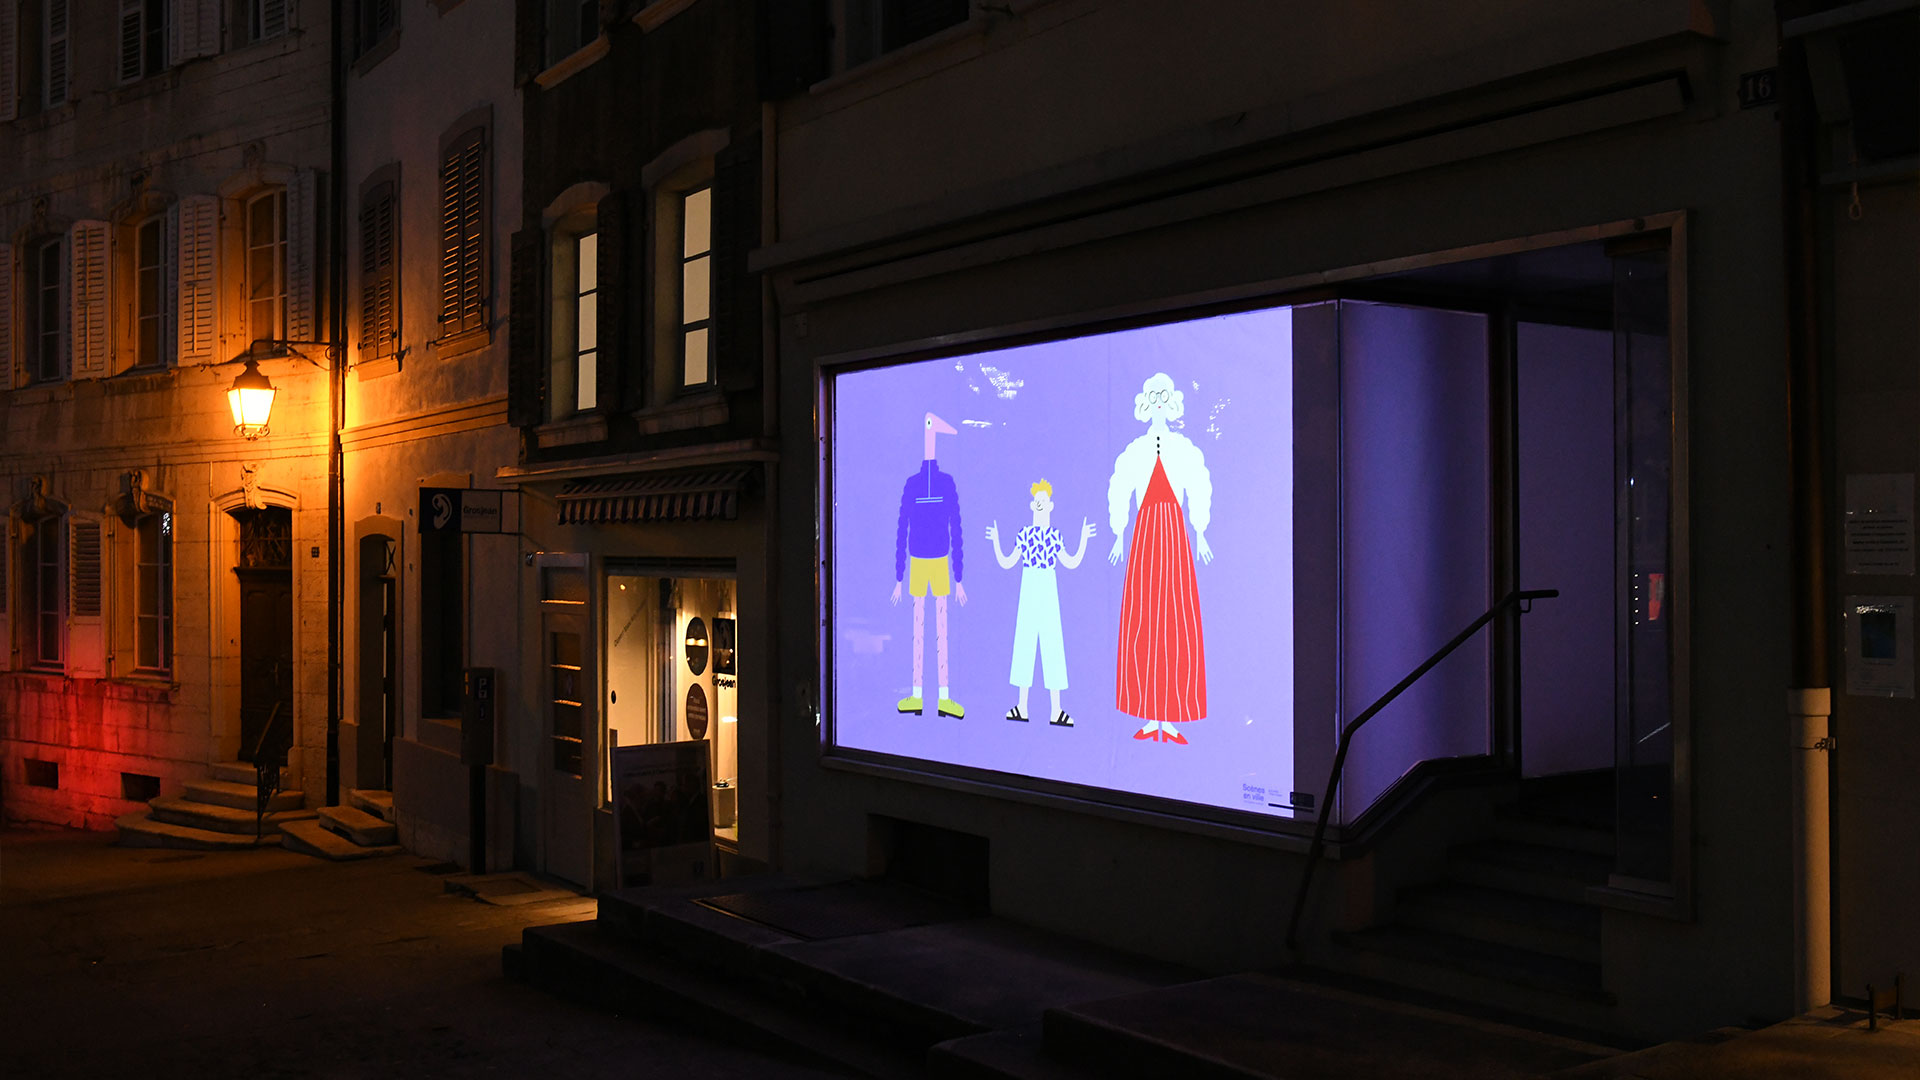 Projection vidéo sur une vitrine en vieille ville de Porrentruy montrant des illustrations colorées.